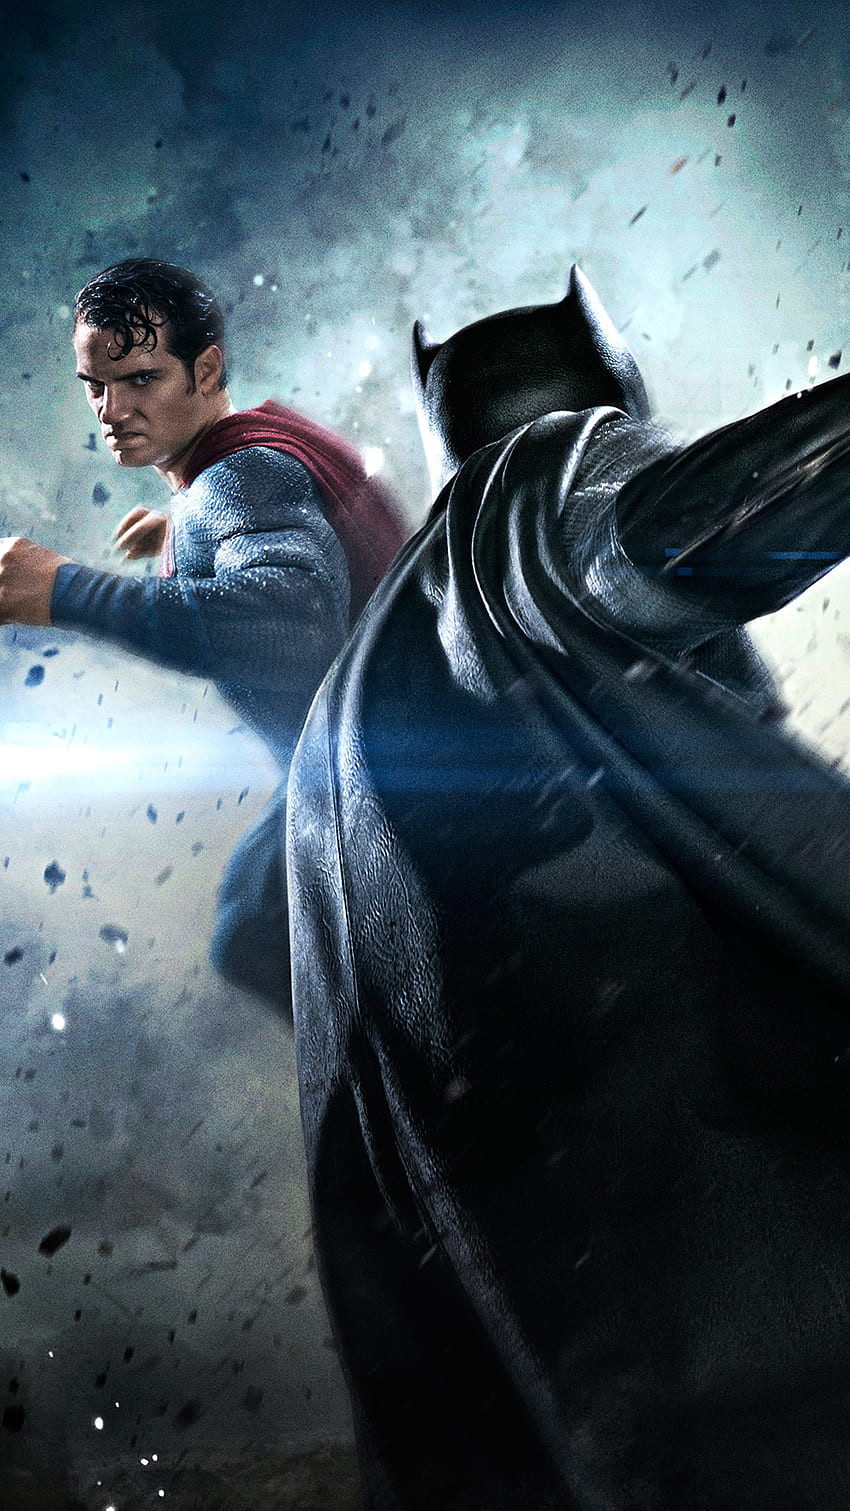 バットマン vs スーパーマン ムービー ファイト iPhone 6 Plus iPhone ロック画面 HD電話の壁紙